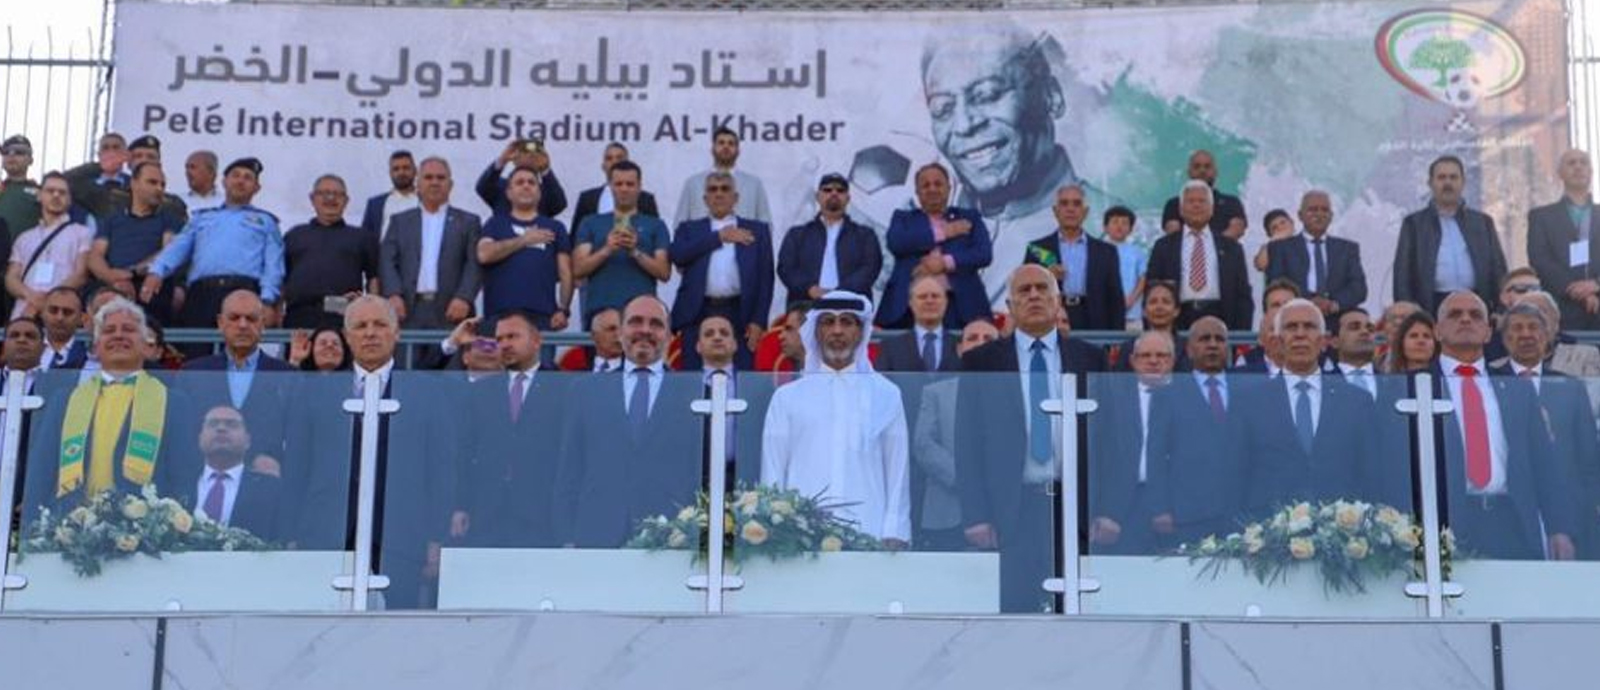 رئيس الاتحاد القطري يشارك في افتتاح ملعب بيليه بفلسطين